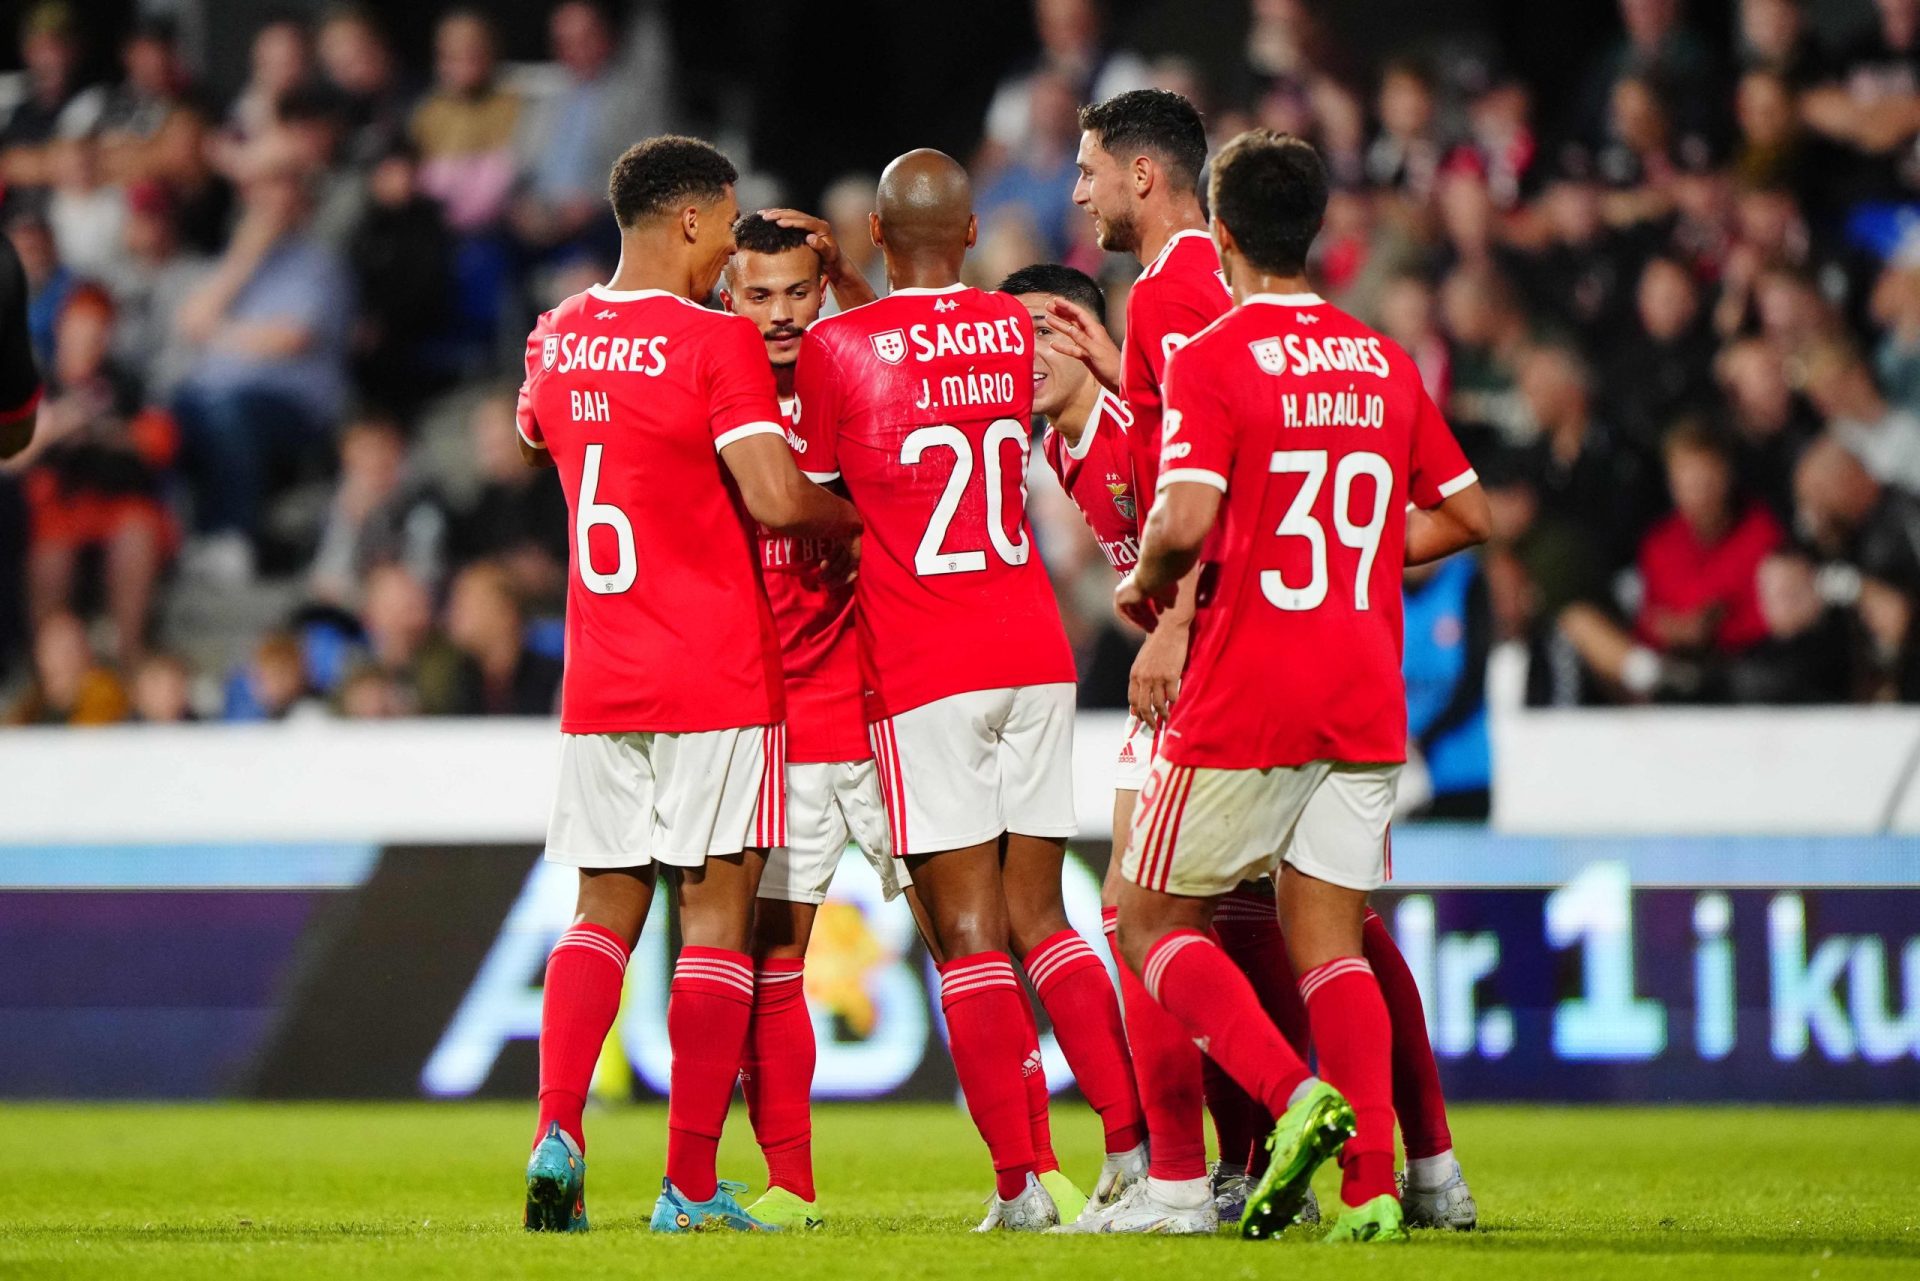 Benfica elimina Midtjylland com vitória por 3-1 e garante apuramento para play-off da Champions